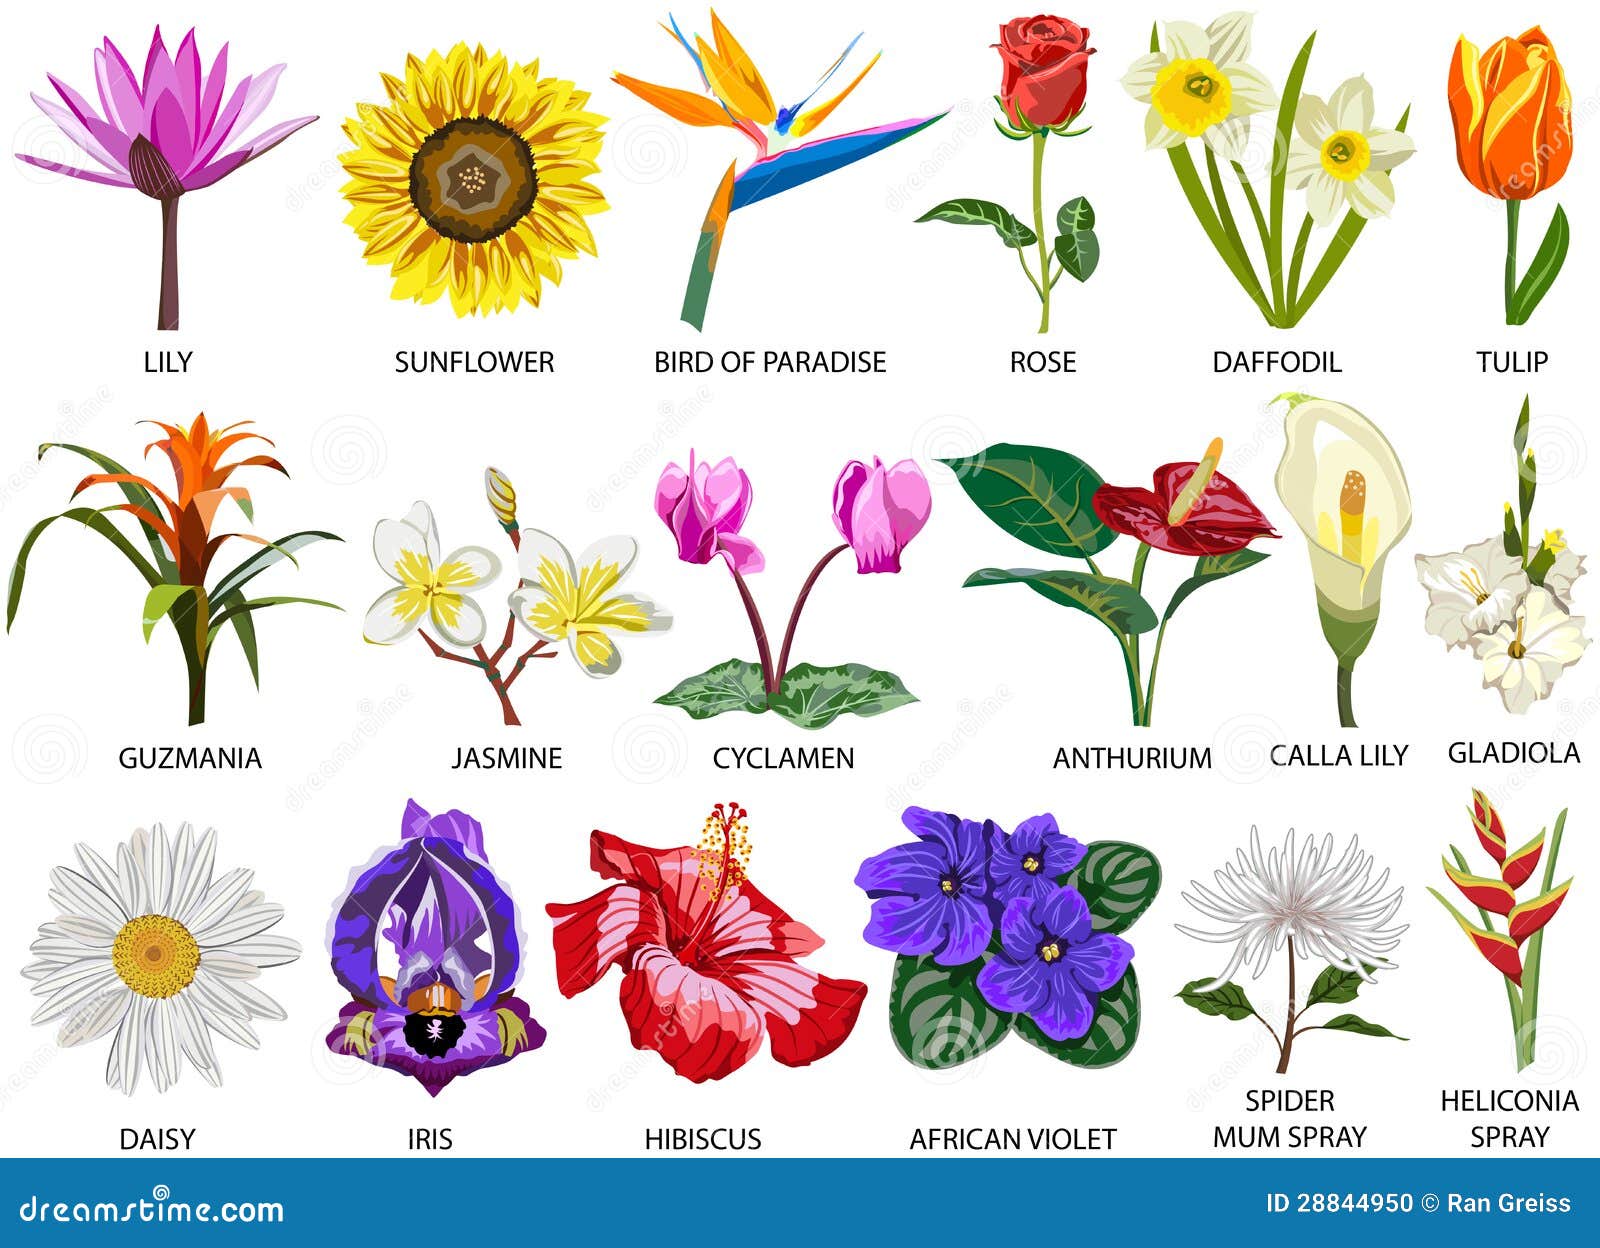 18 Espécies De Flores Coloridas Ilustração Stock - Ilustração de margarida,  floral: 28844950